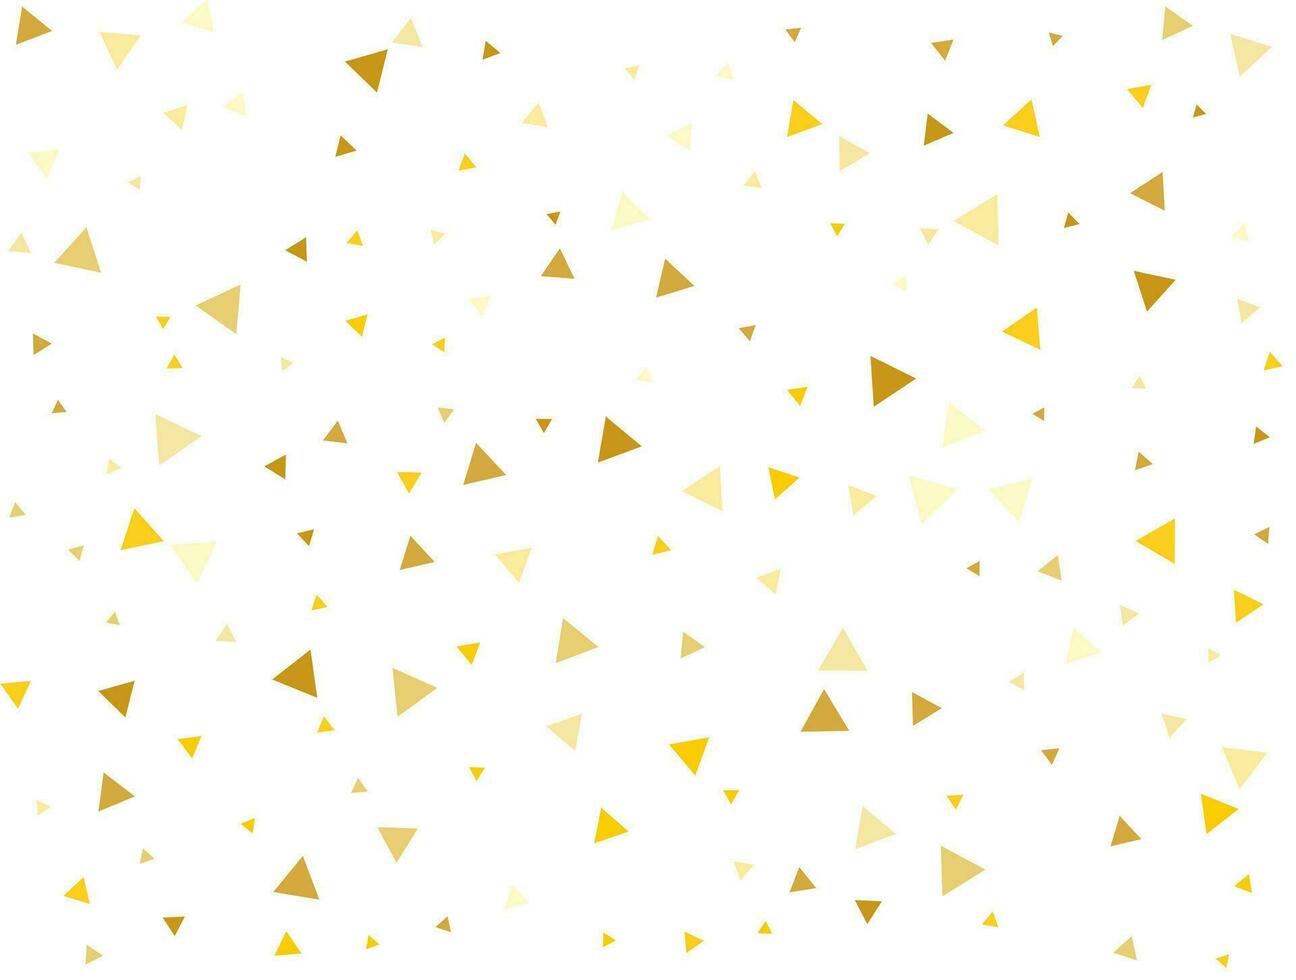 Noël lumière d'or triangulaires. confettis fête, chute d'or abstrait décoration pour faire la fête. vecteur illustration